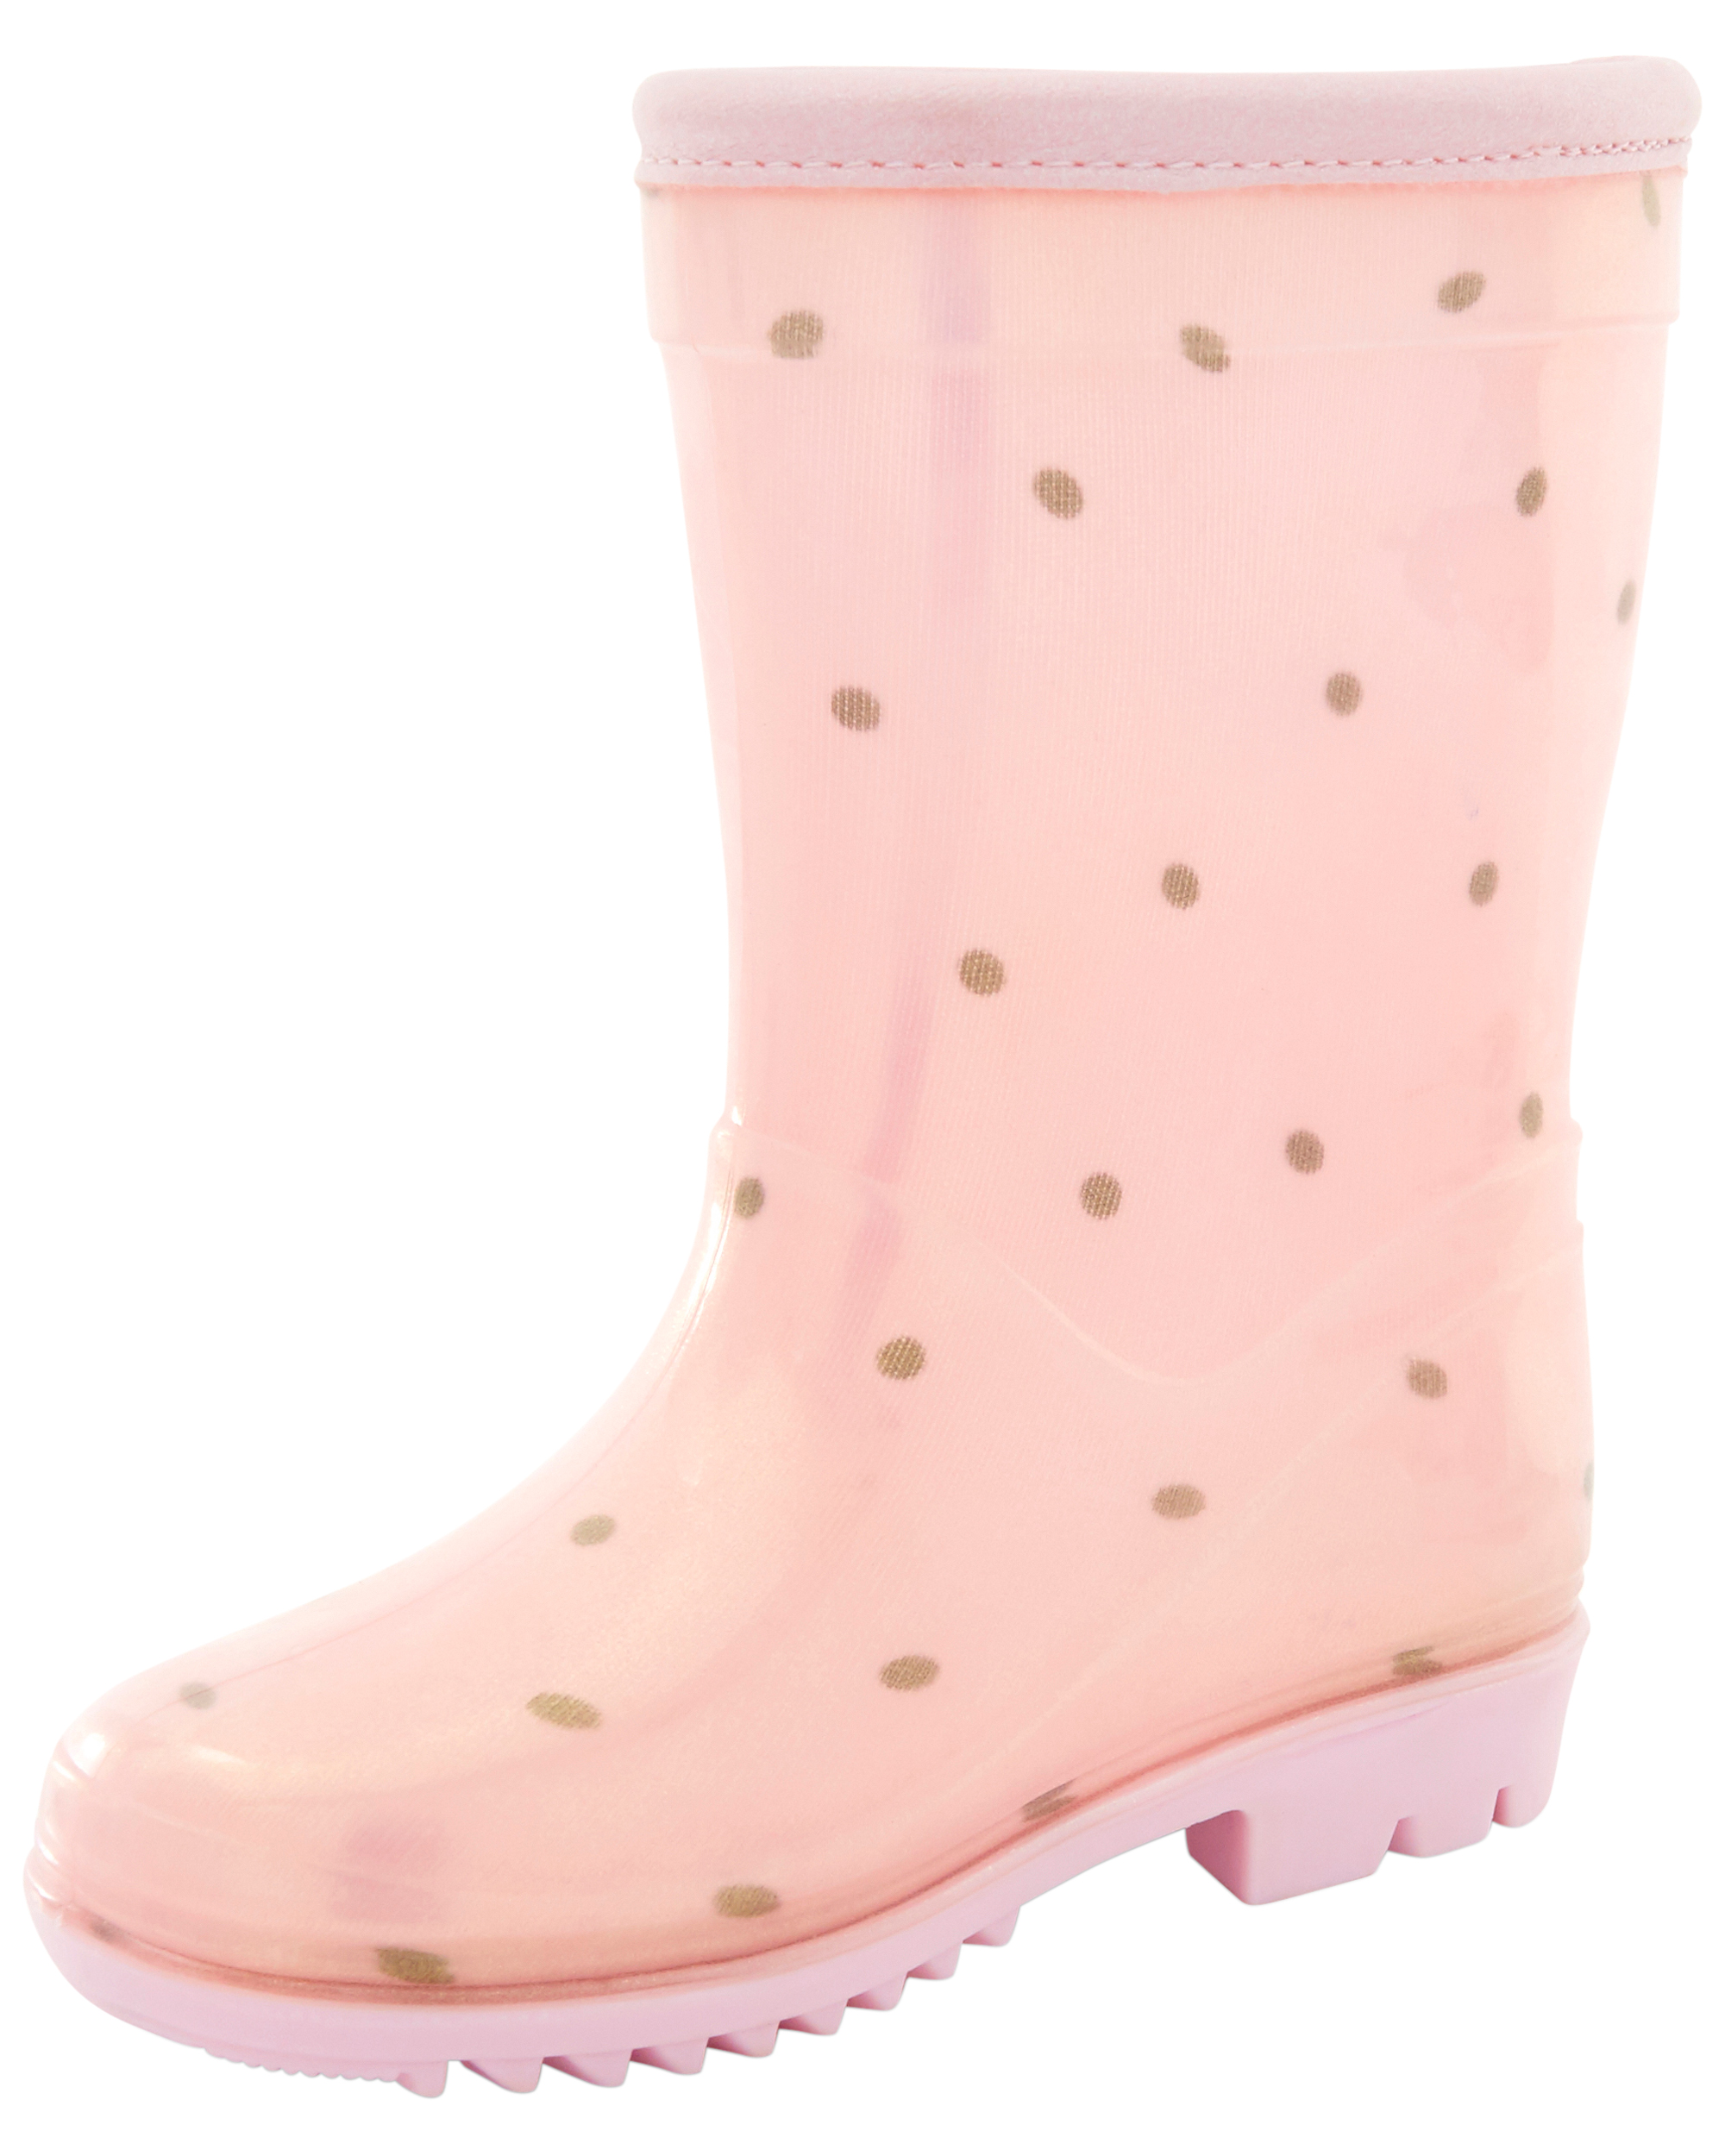 Toddler Polka Dot Rain Boots